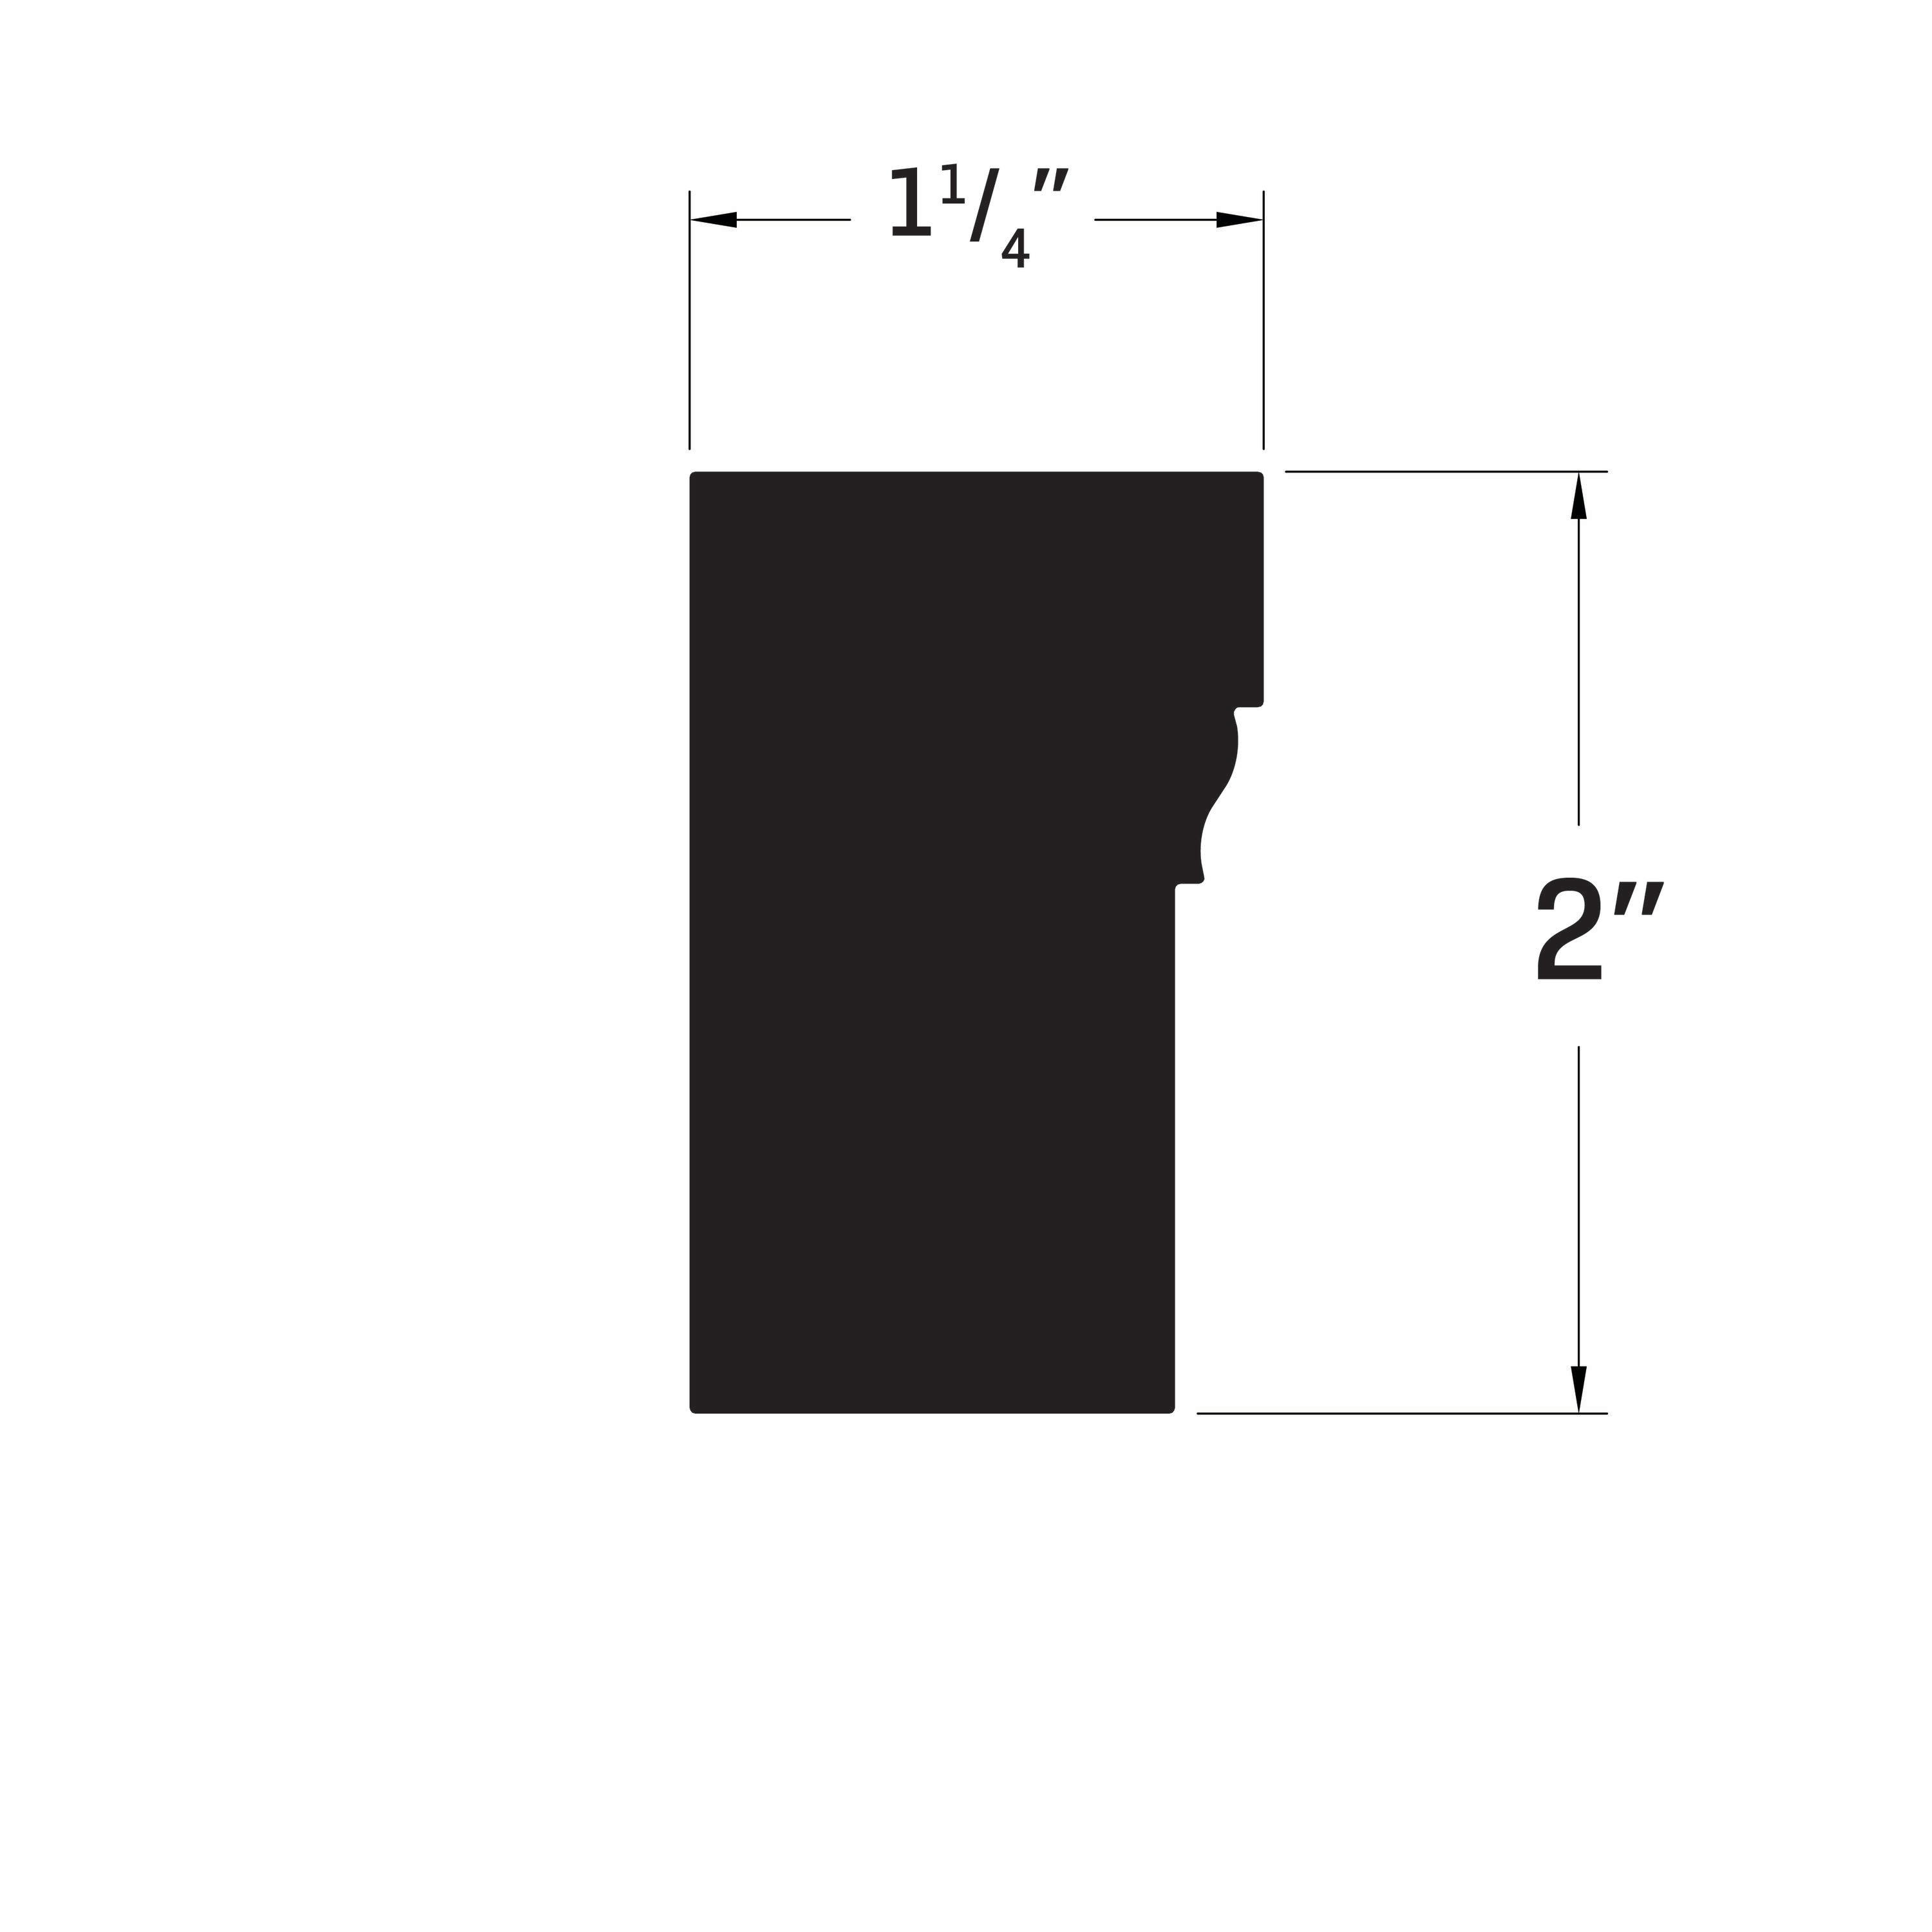 7216 Brick mold Exterior [1-13/16 x 3-1/4]